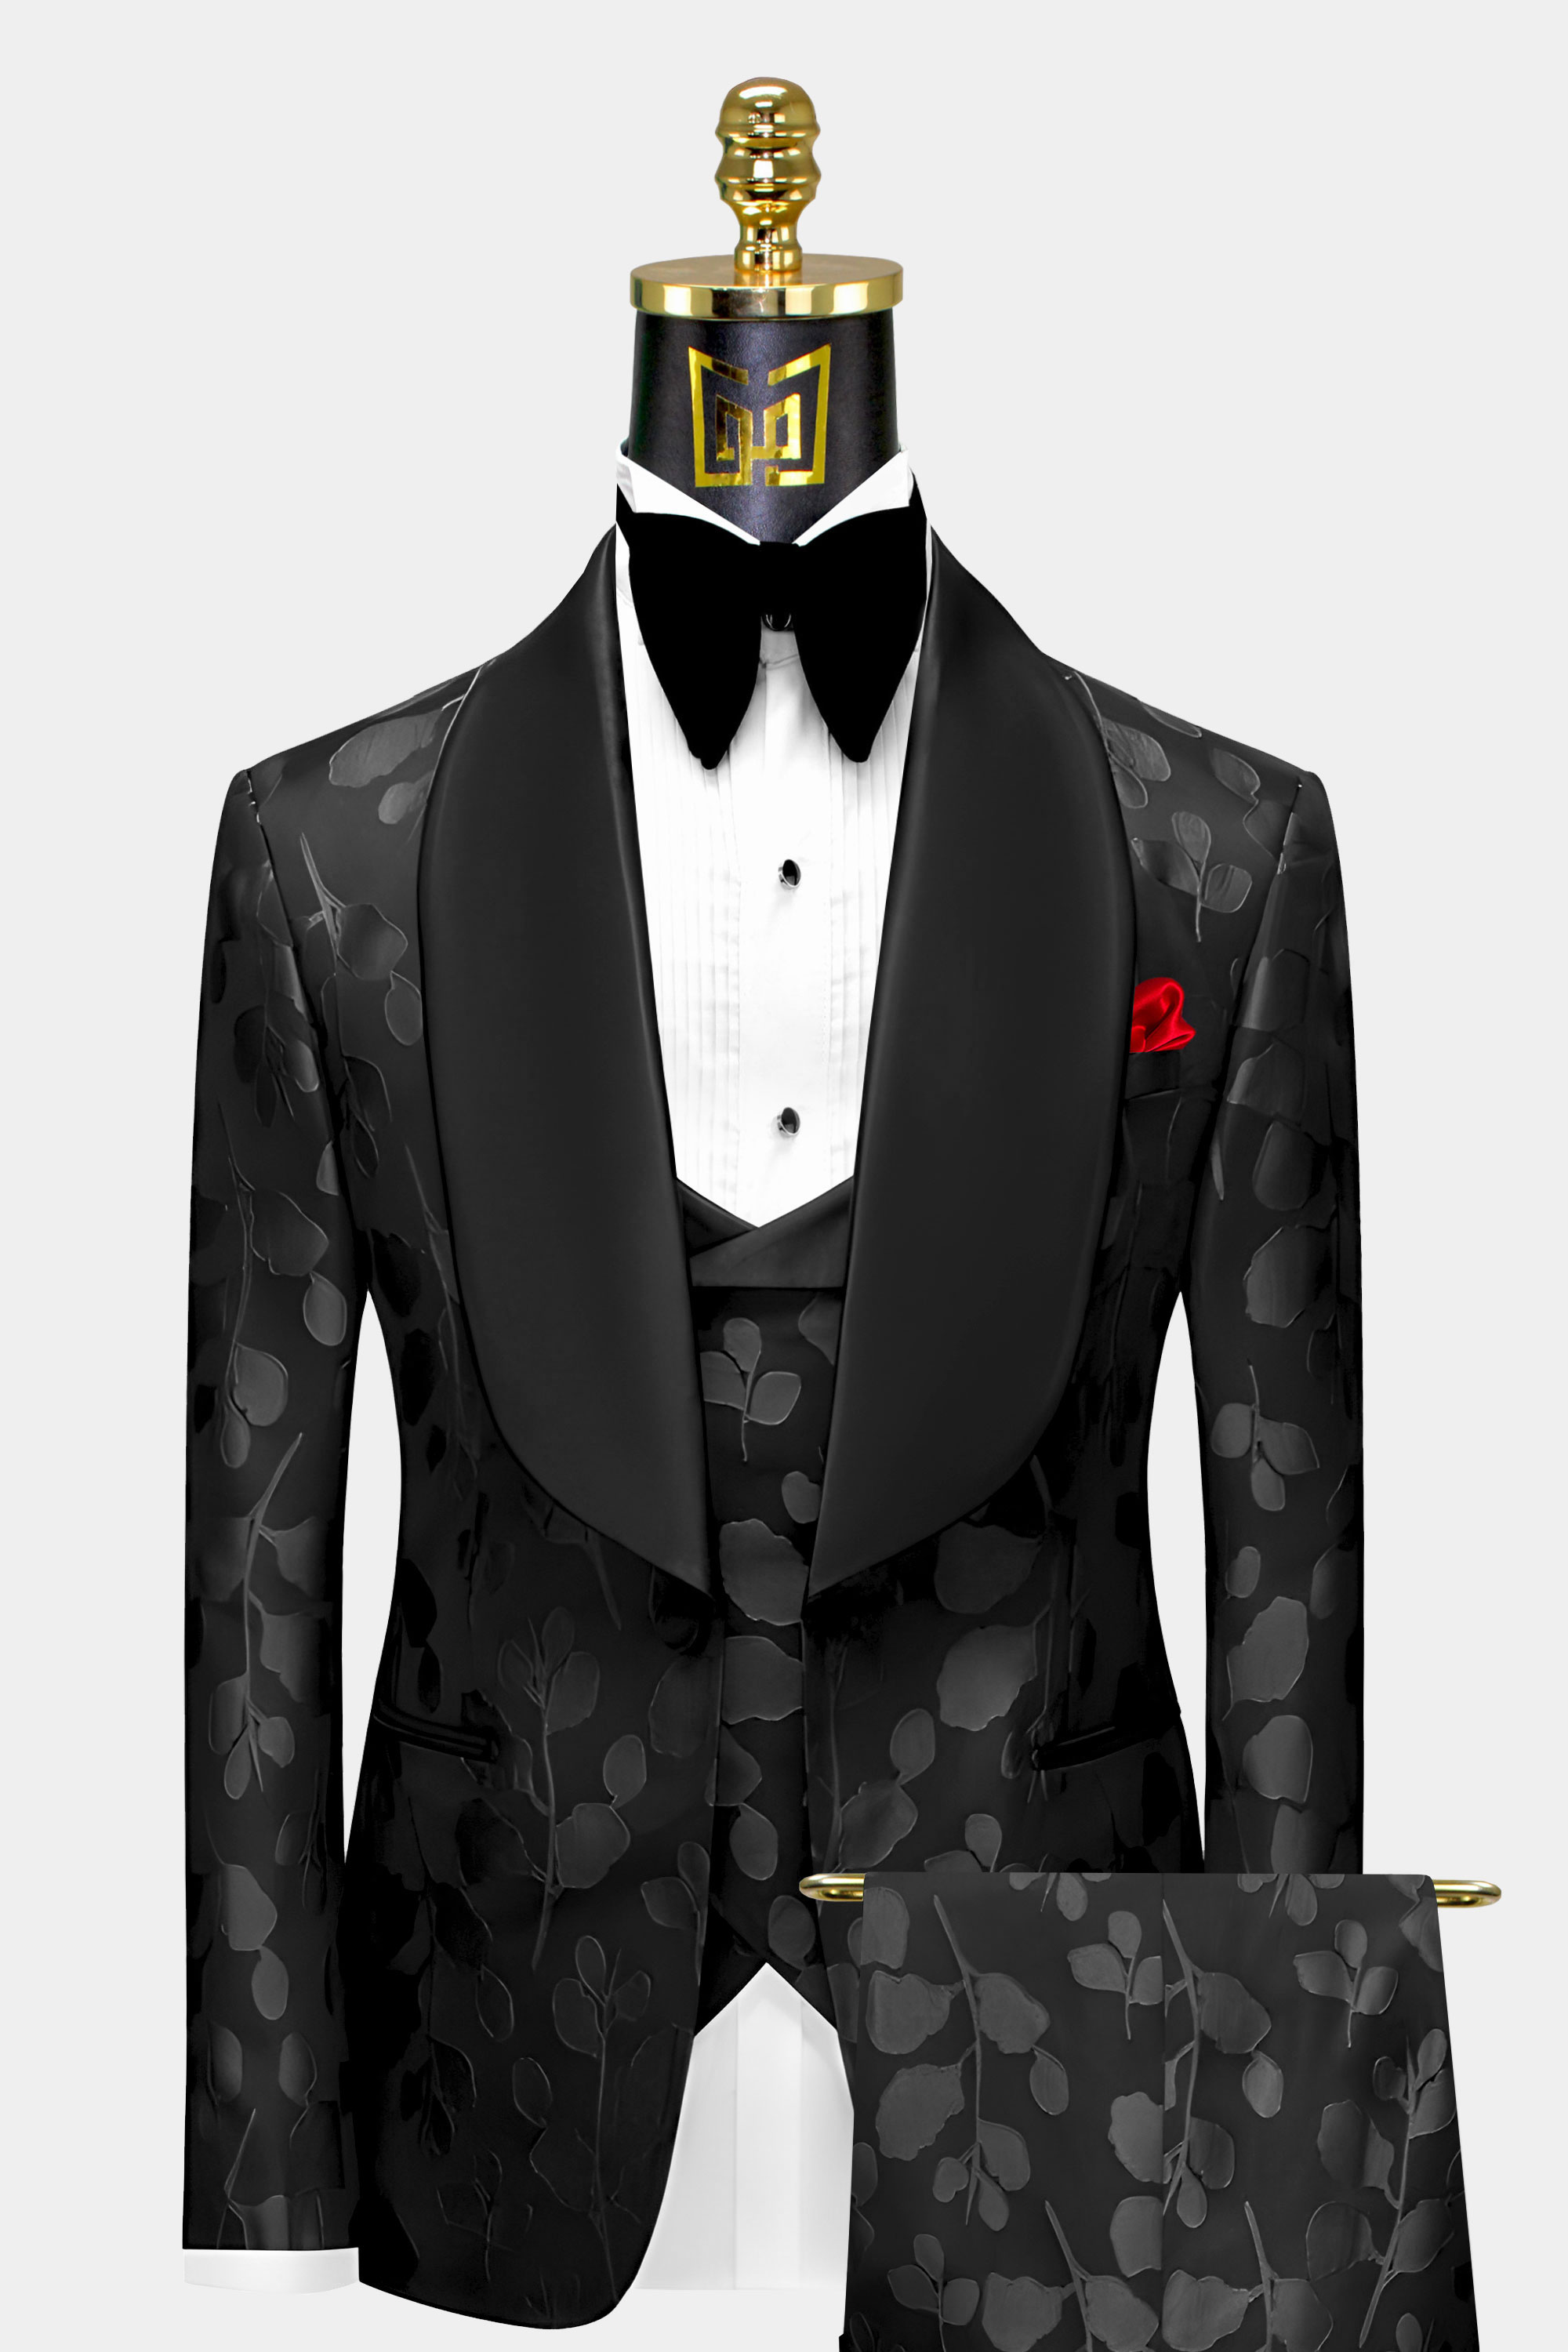 Mens suits,Zoot suits,Tuxedos,Overcoat,Zoot suit,Tuxedo,Black Suits,Discount  Suit,Double Breasted Suit,Black Tuxedo,Church Suit…